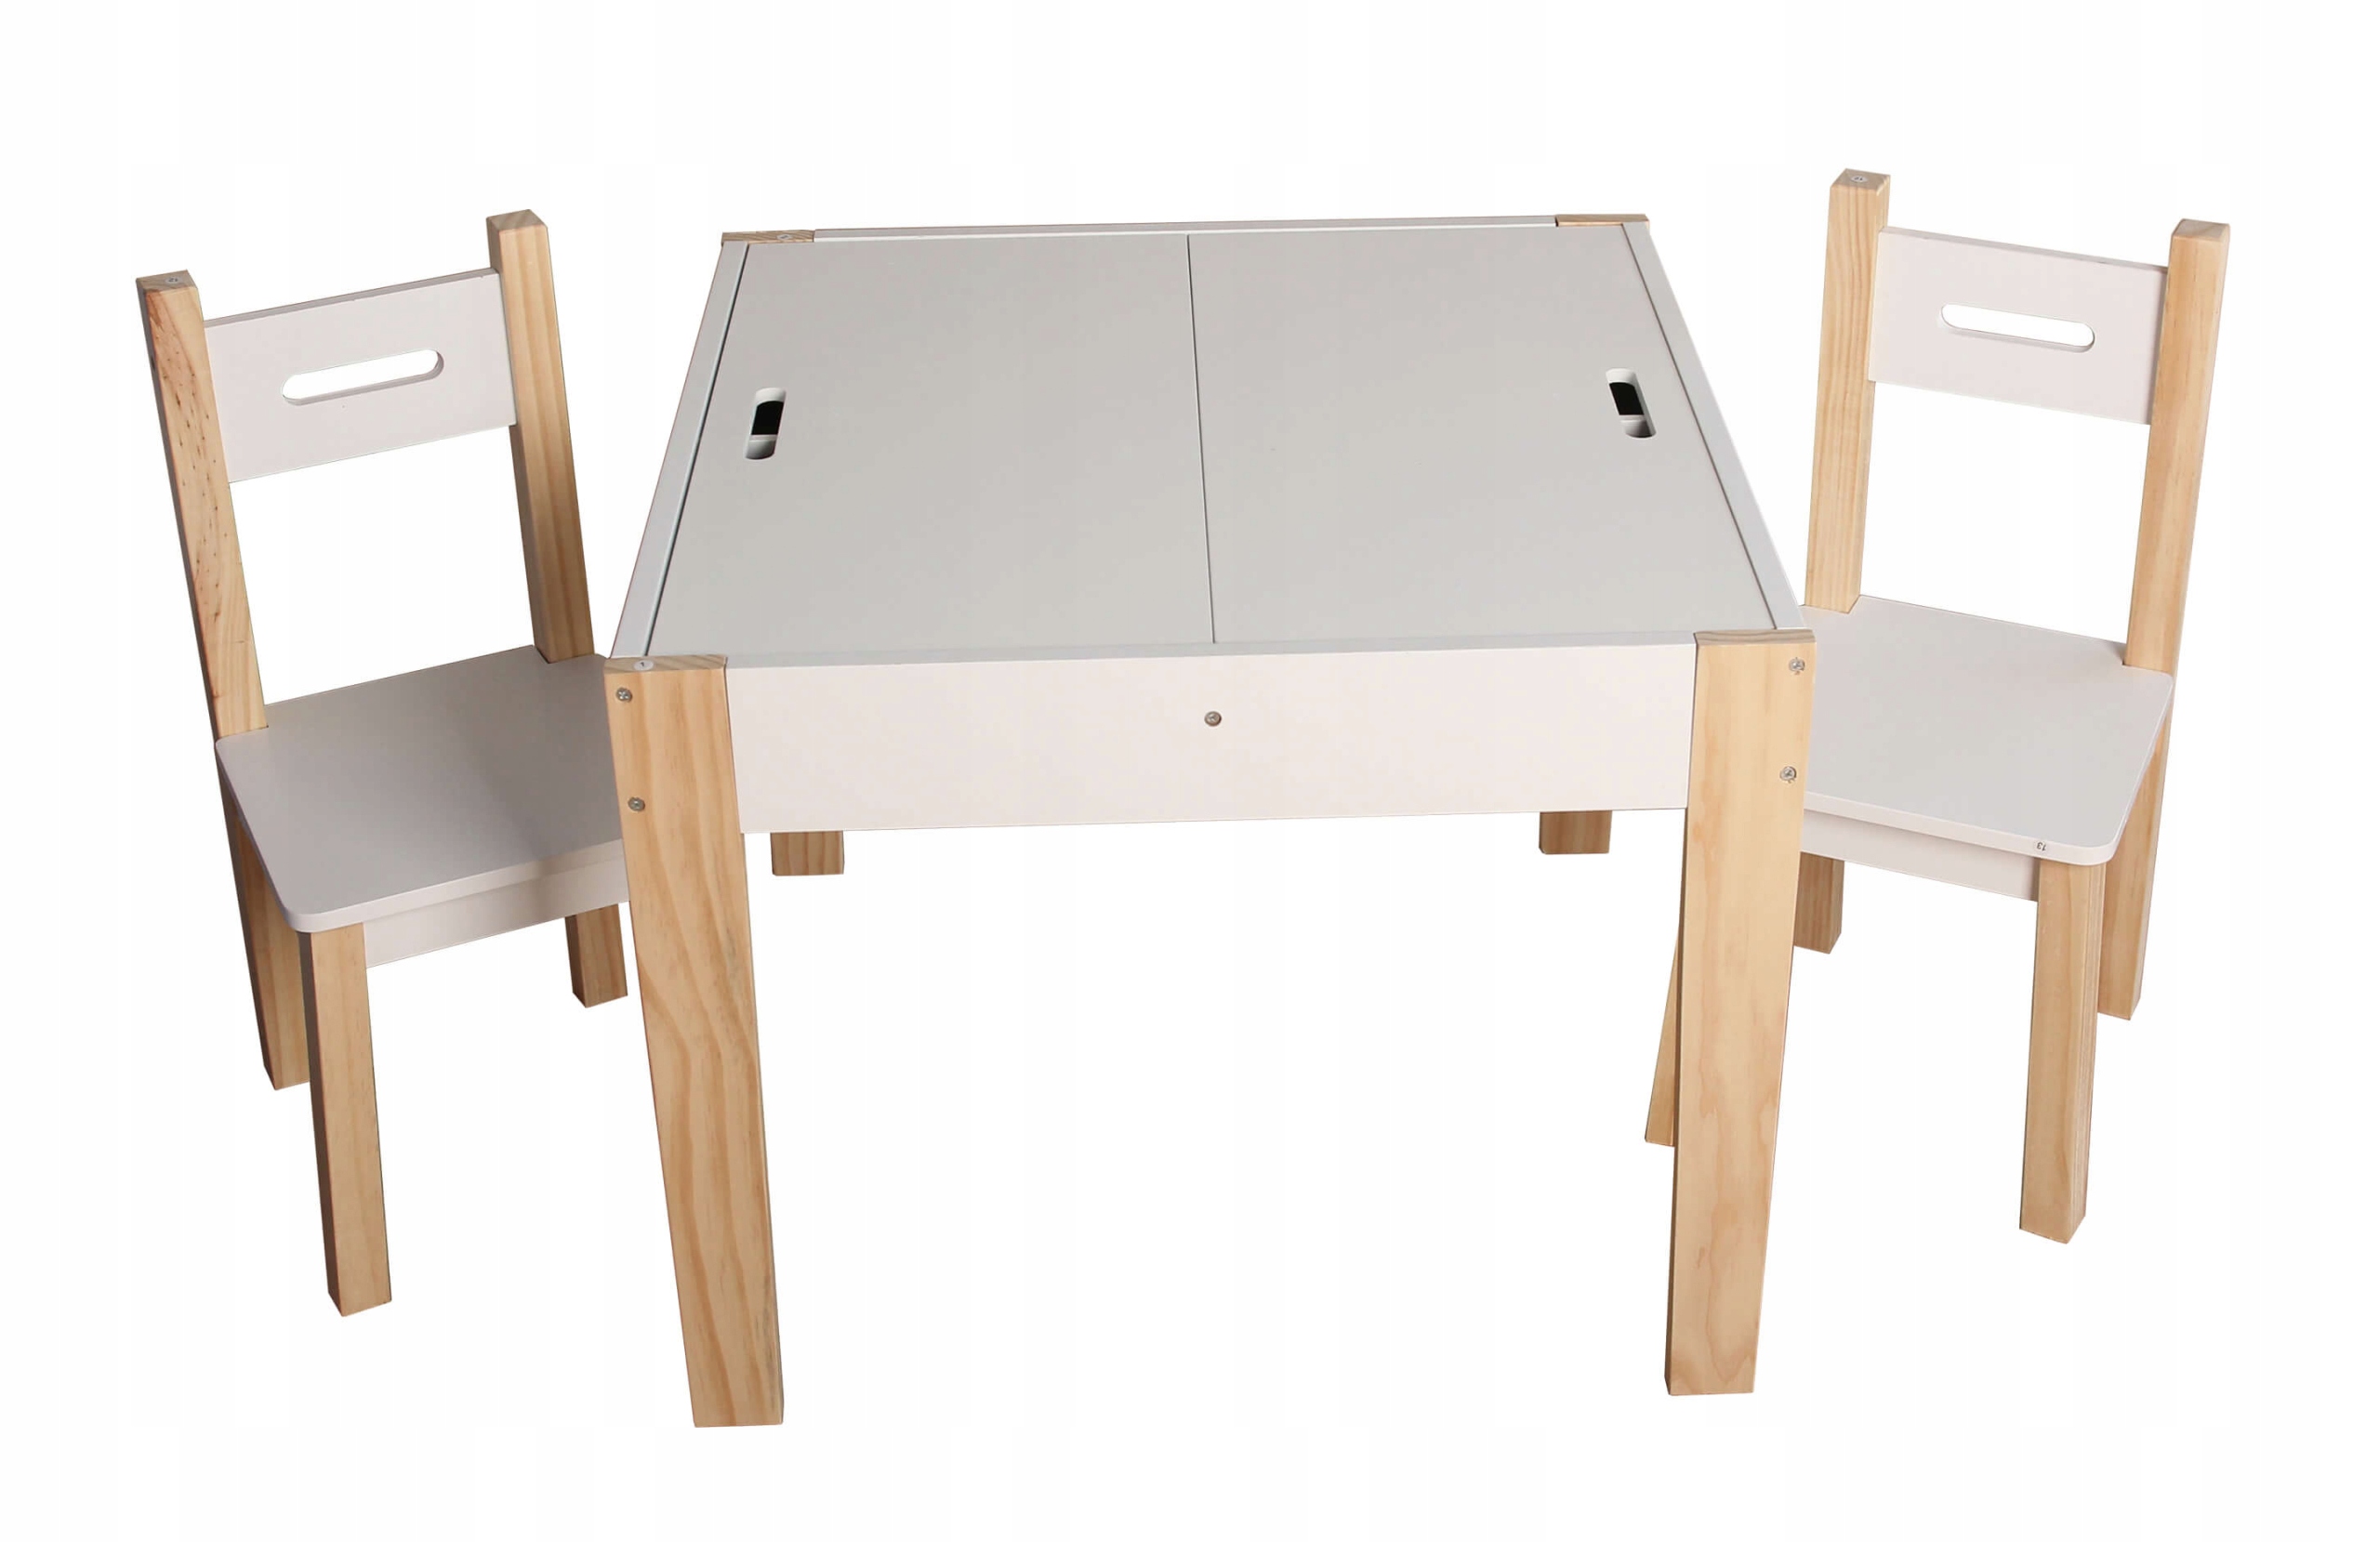 Drewniany stolik z krzesełkami dla dzieci Sapphire Kids SK-17